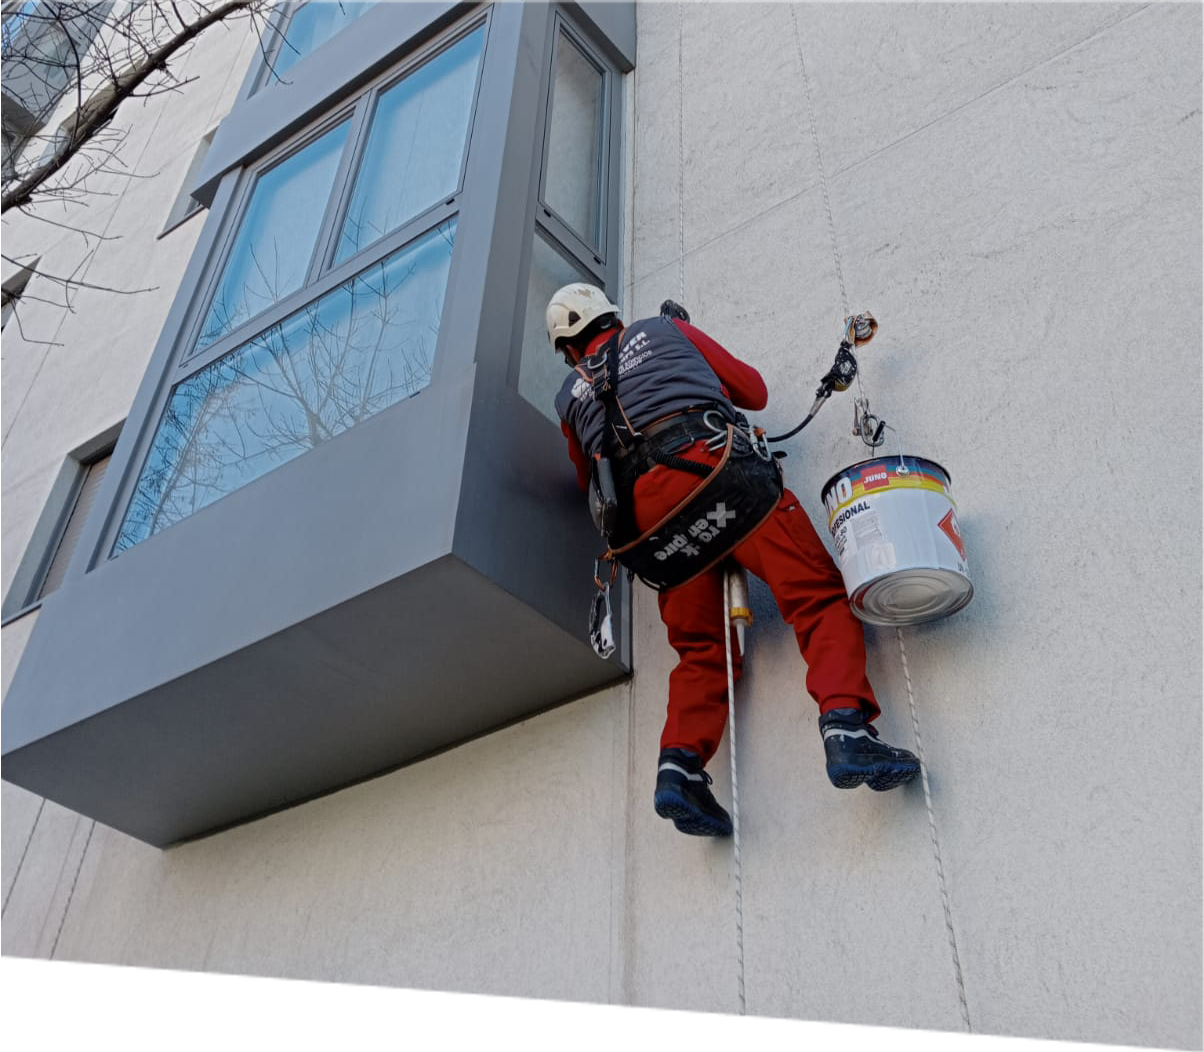 Trabajador con arnés de seguridad realiza trabajos de pintura en la fachada exterior de un moderno edificio urbano, demostrando técnicas avanzadas de rehabilitación arquitectónica en altura en un entorno urbano.